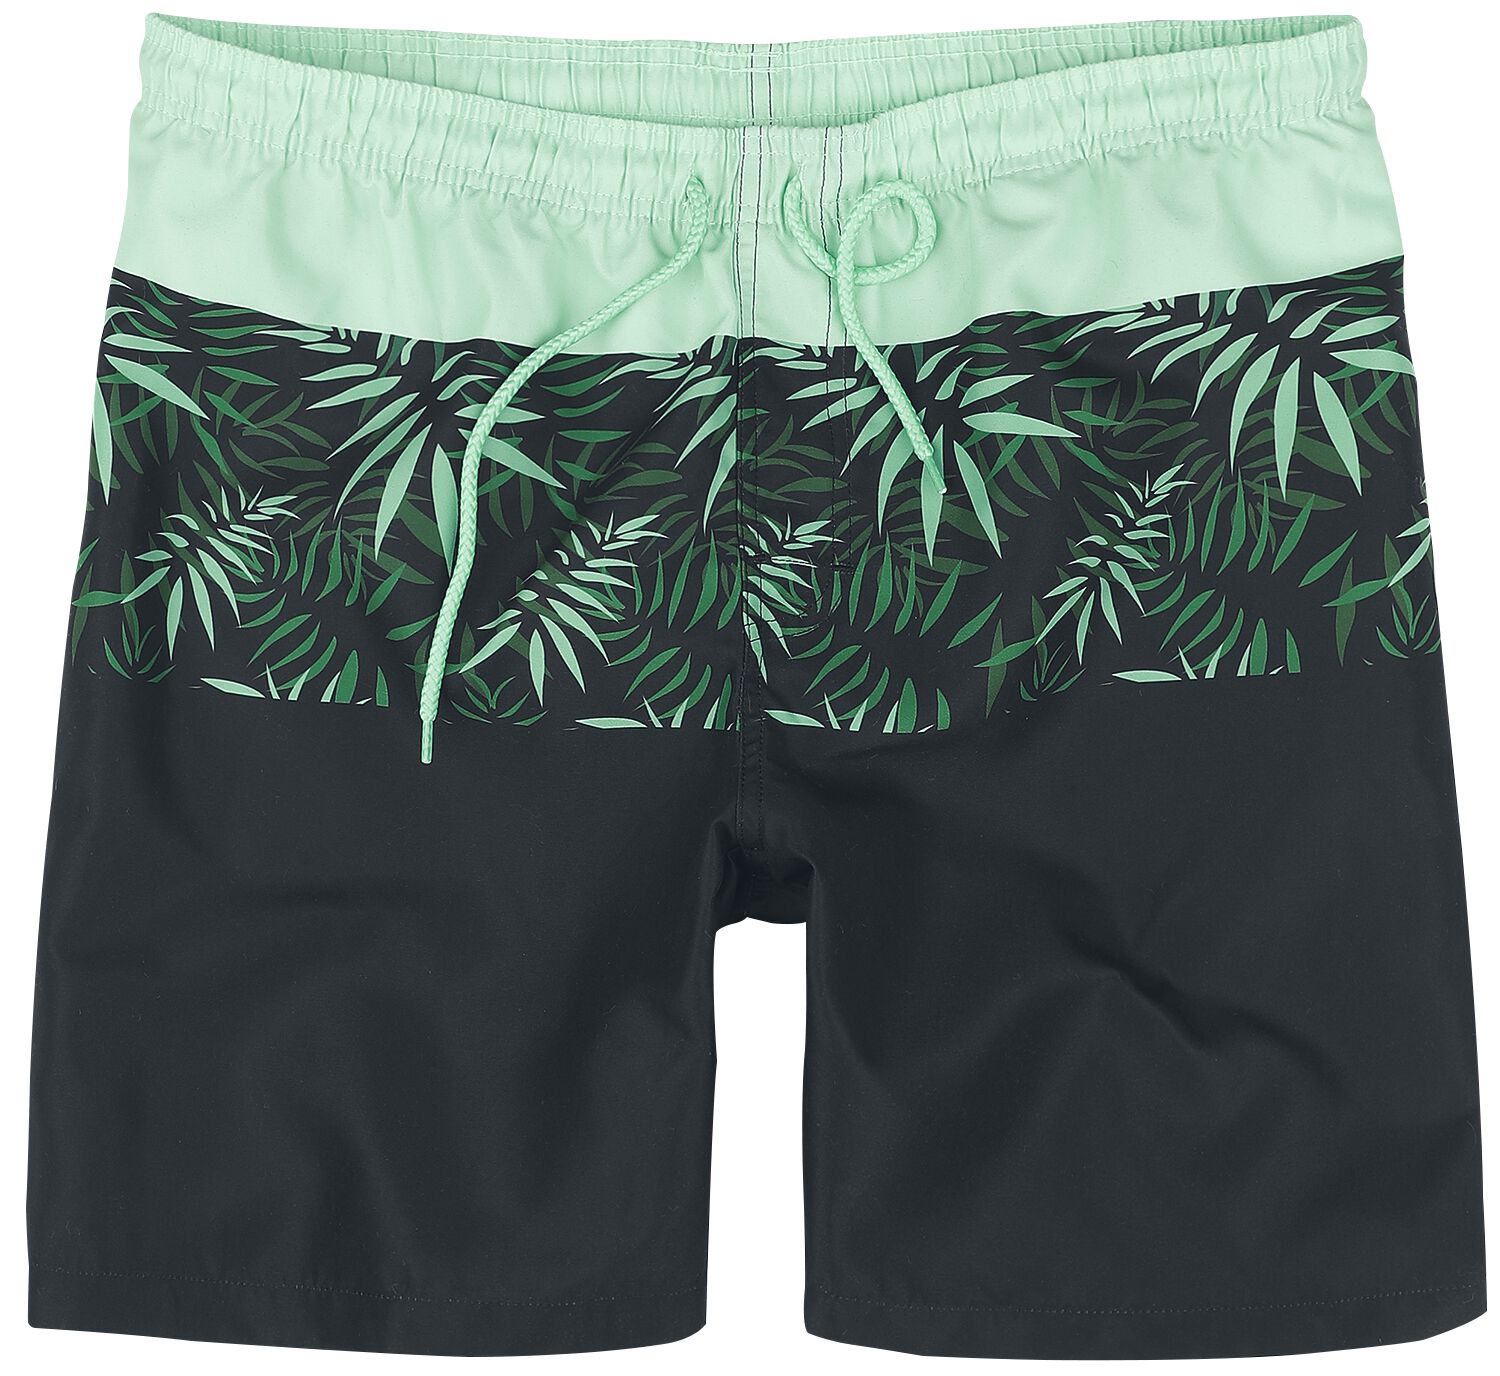 Badeshort für Männer  schwarz/grün Swim Shorts With Palm Trees von RED by EMP